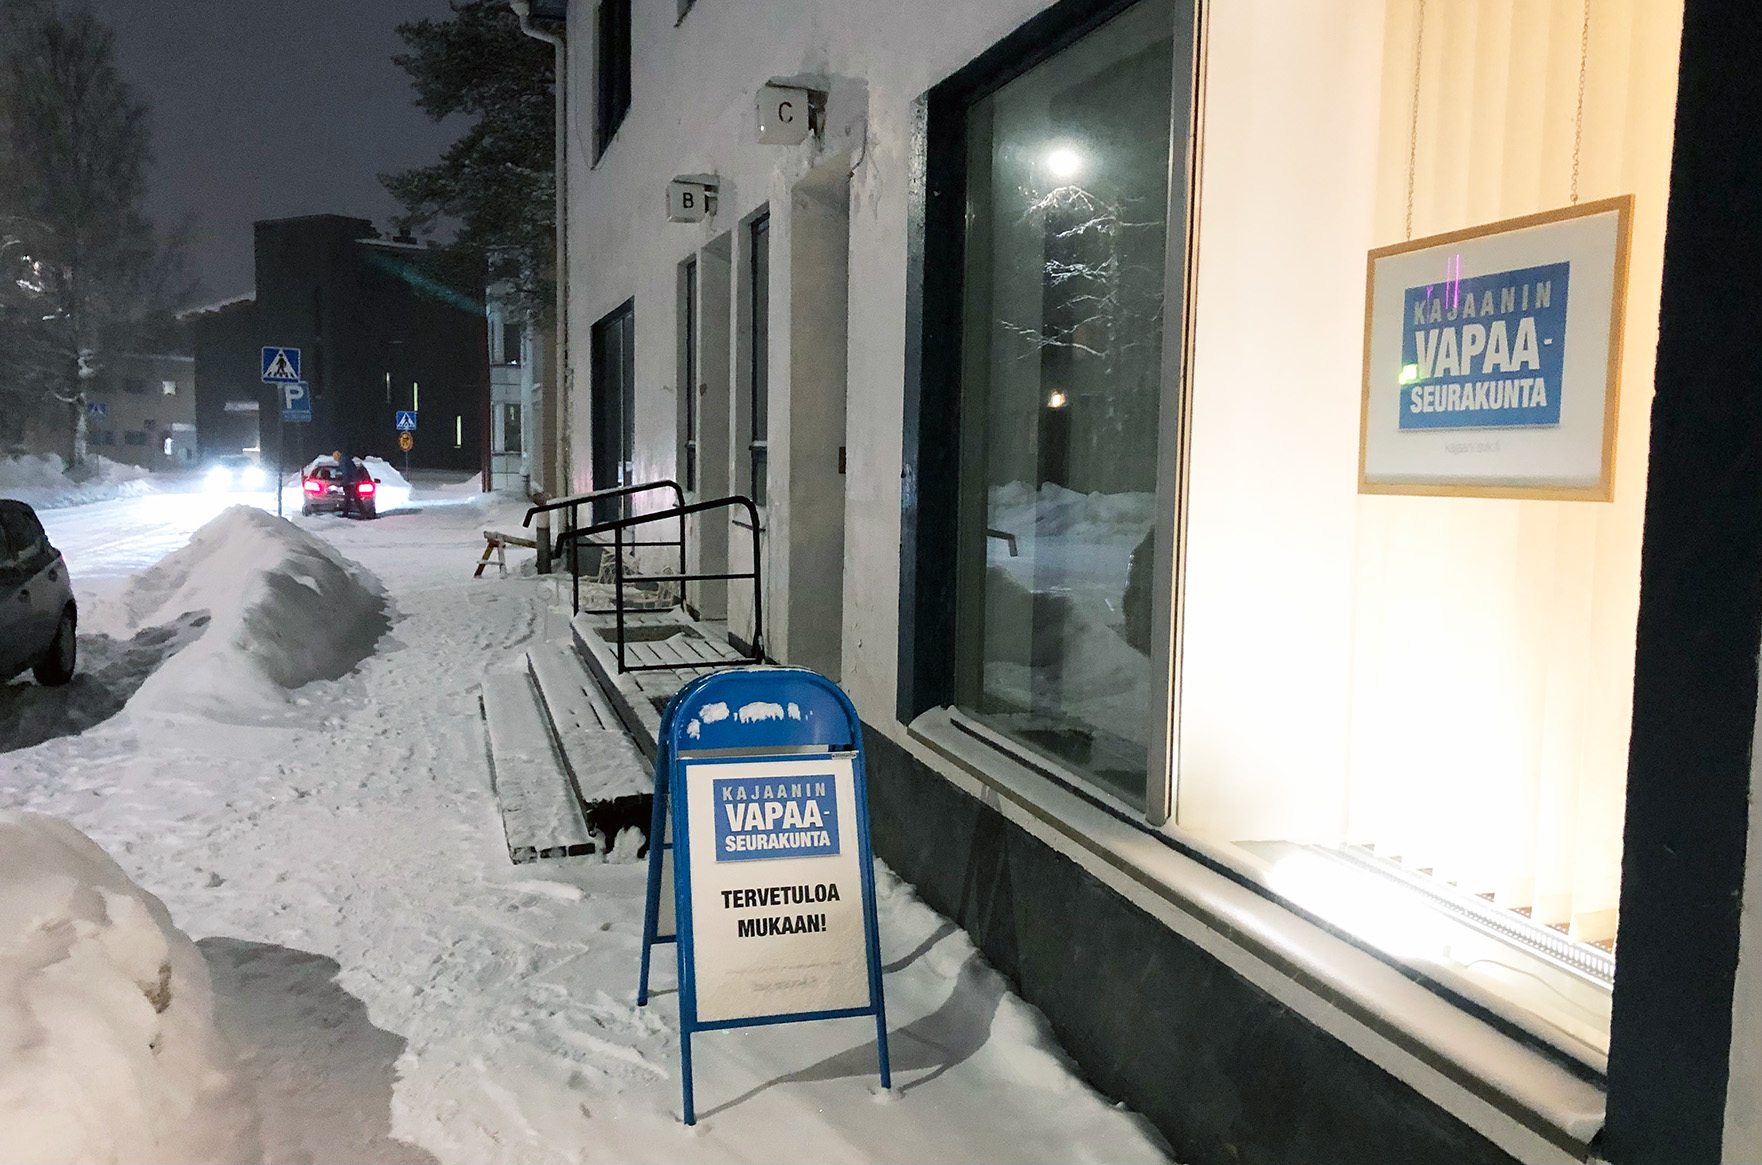 Kuvassa on lumen peittämä katu ja talo, jonka näyteikkunasta kajastaa valo. Näyteikkunassa ja myös kadulla on kyltti, jossa lukee Kajaanin vapaaseurakunta.